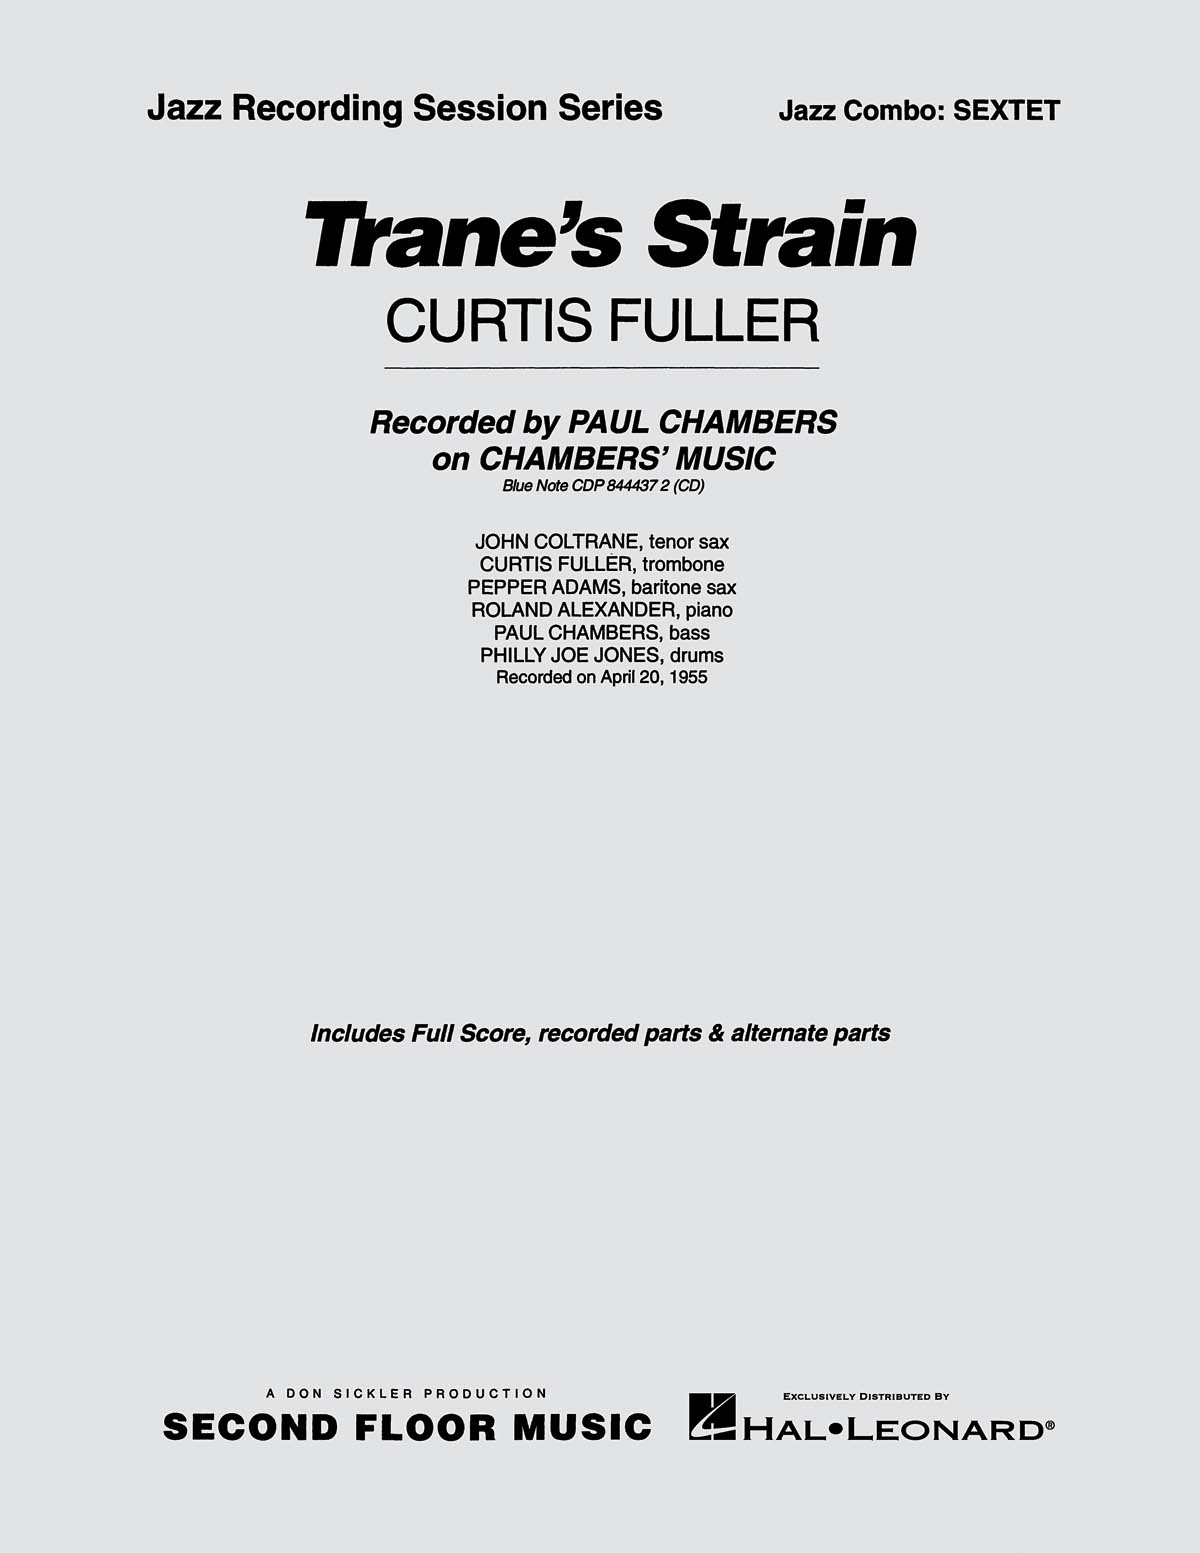 Trane’s Strain